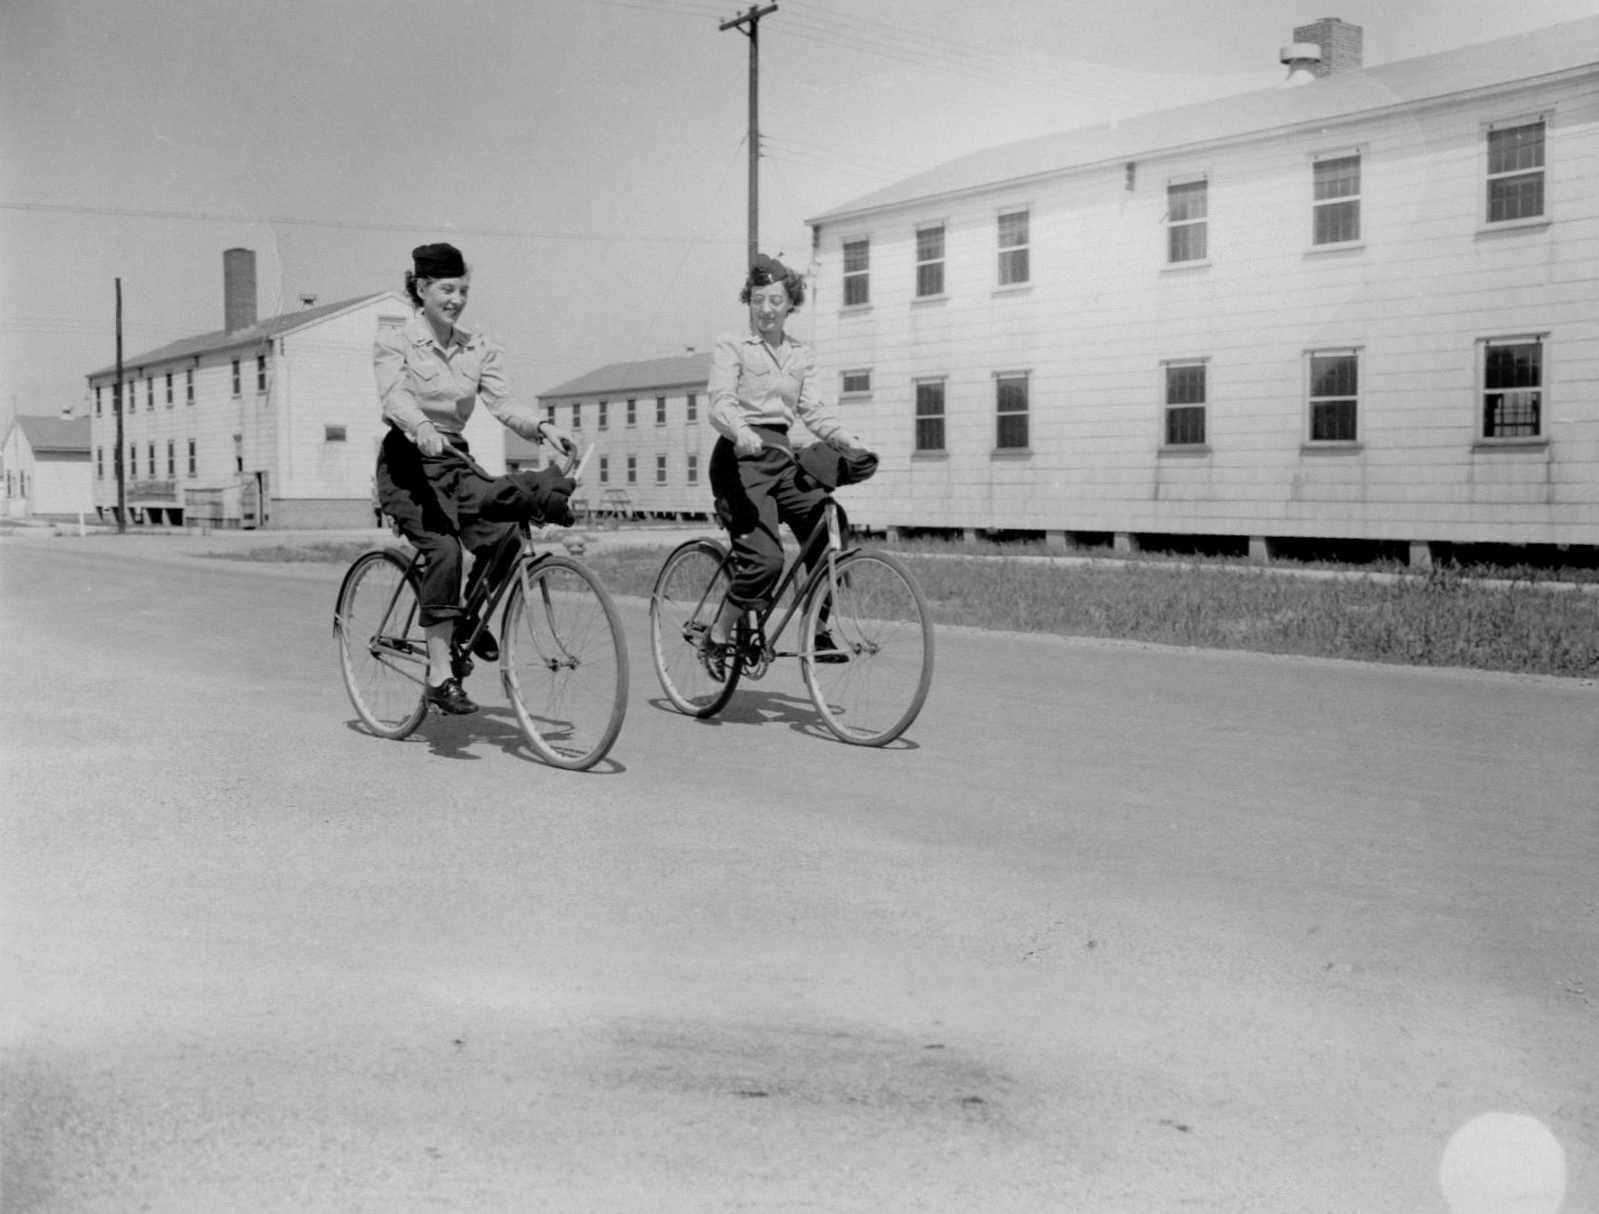 Army Nurses Riding Bikes at Camp Atterbury